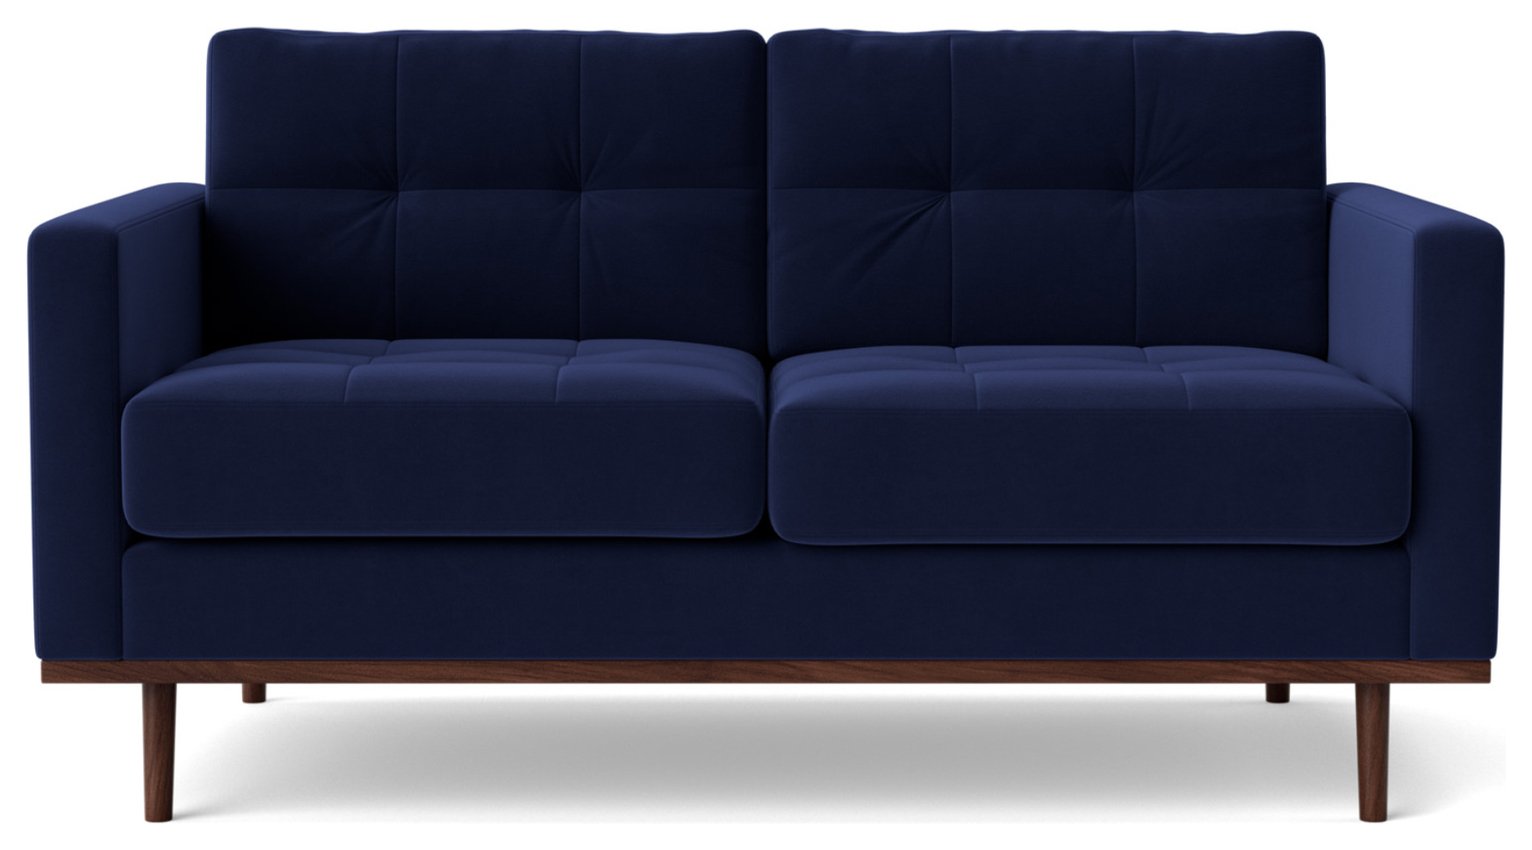 Swoon Berlin Velvet 2 Seater Sofa - Ink Blue